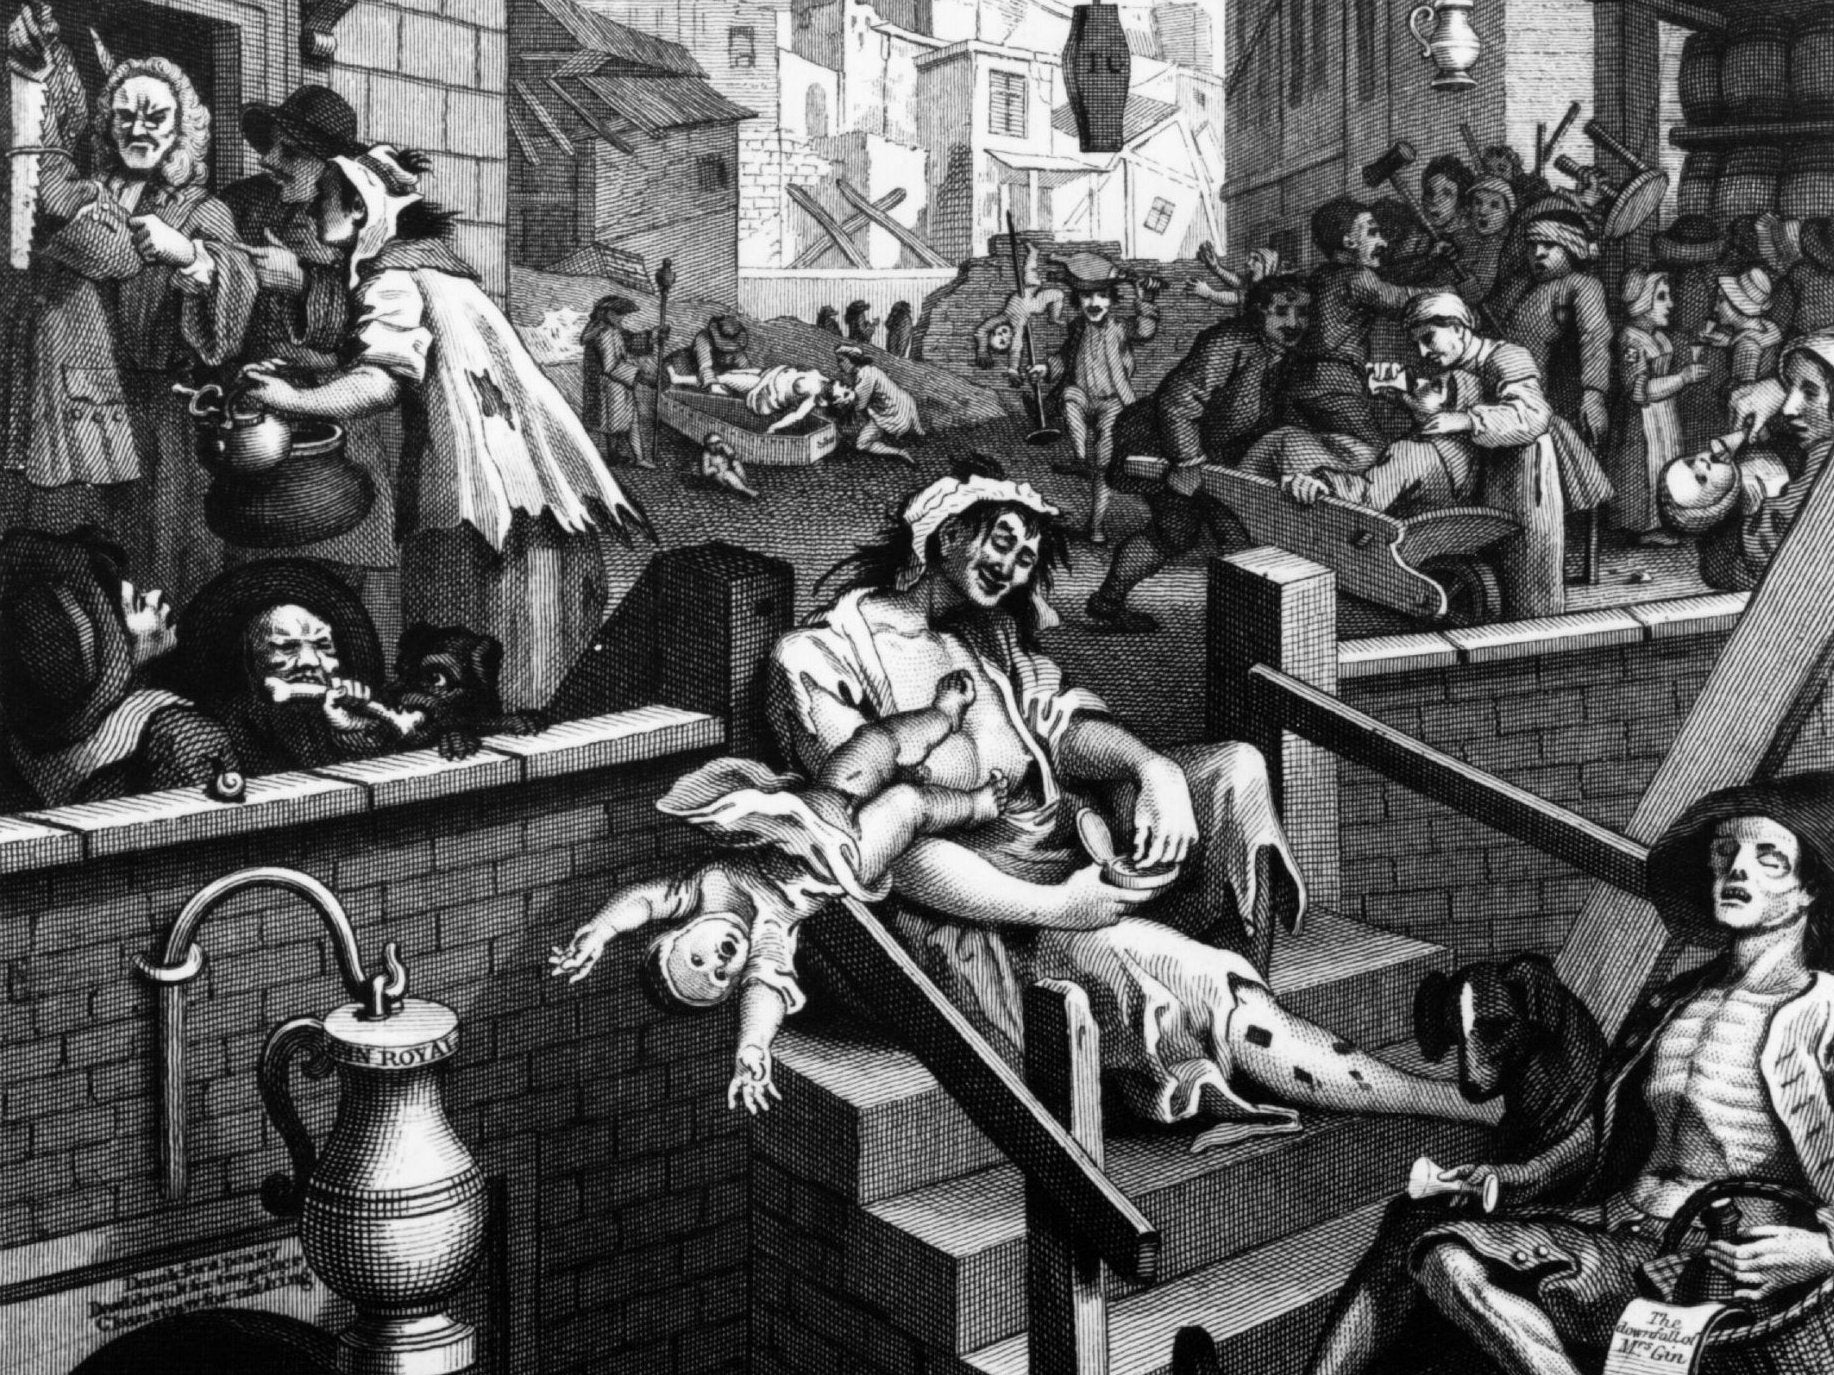 Scenes of debauchery in Gin Lane by William Hogarth